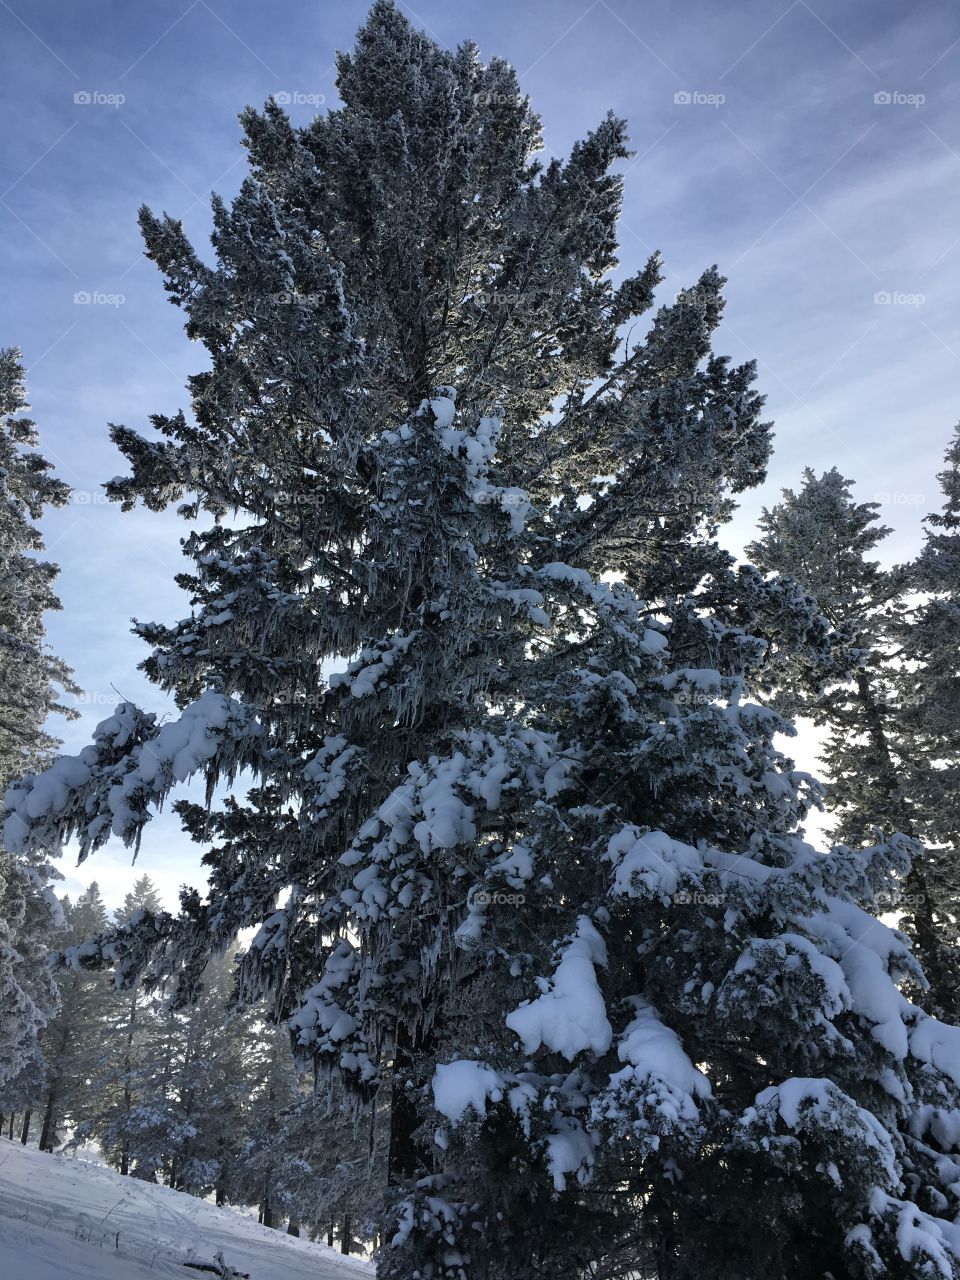 Snowy tree